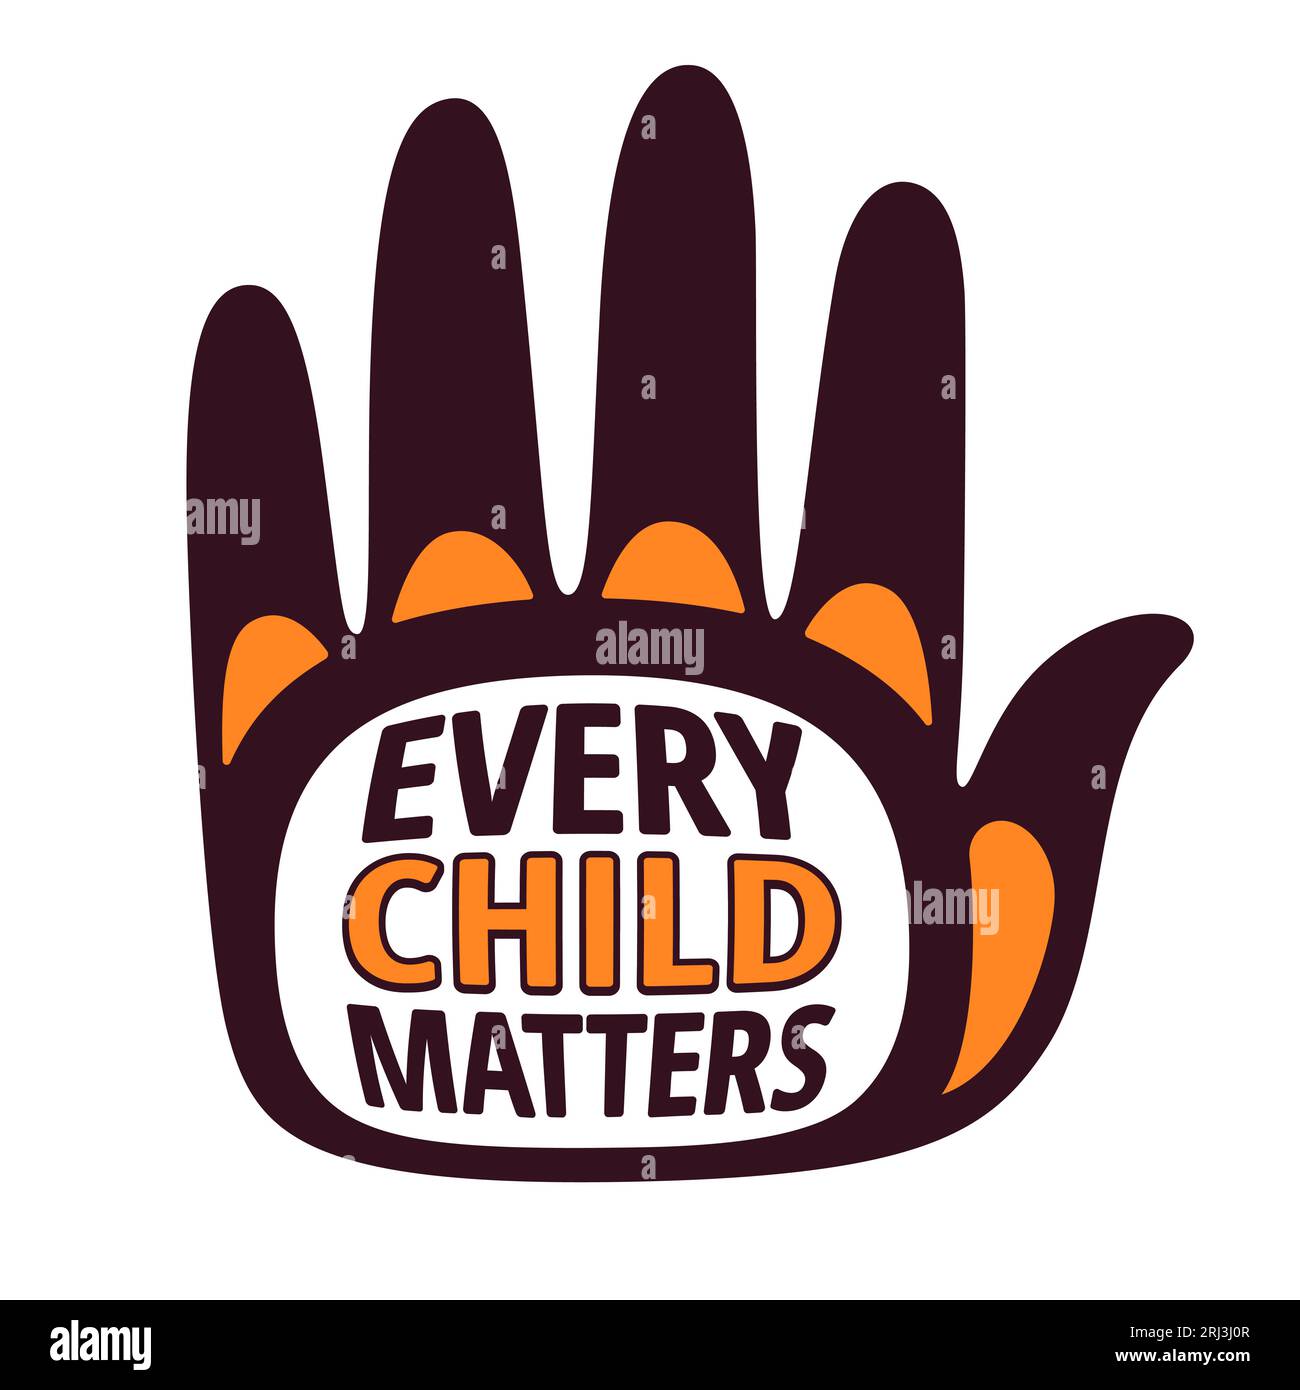 Every Child Matters, giornata nazionale per la verità e la riconciliazione (Orange Shirt Day) in Canada. Testo con disegno stampato a mano. Illustrazione banner vettoriale. Illustrazione Vettoriale